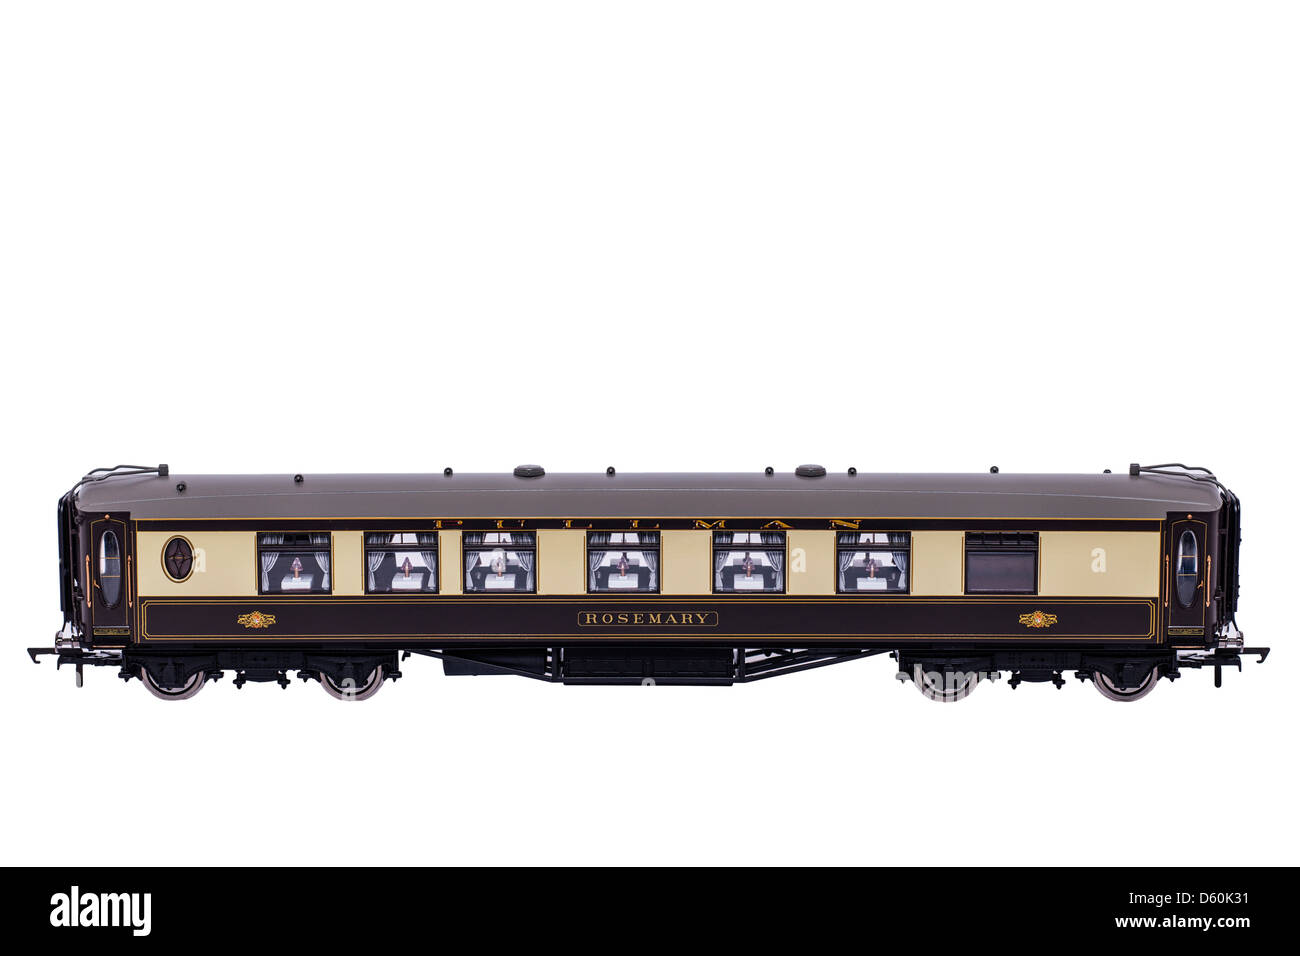 Un train à vapeur modèle Hornby chariot Pullman sur fond blanc Banque D'Images